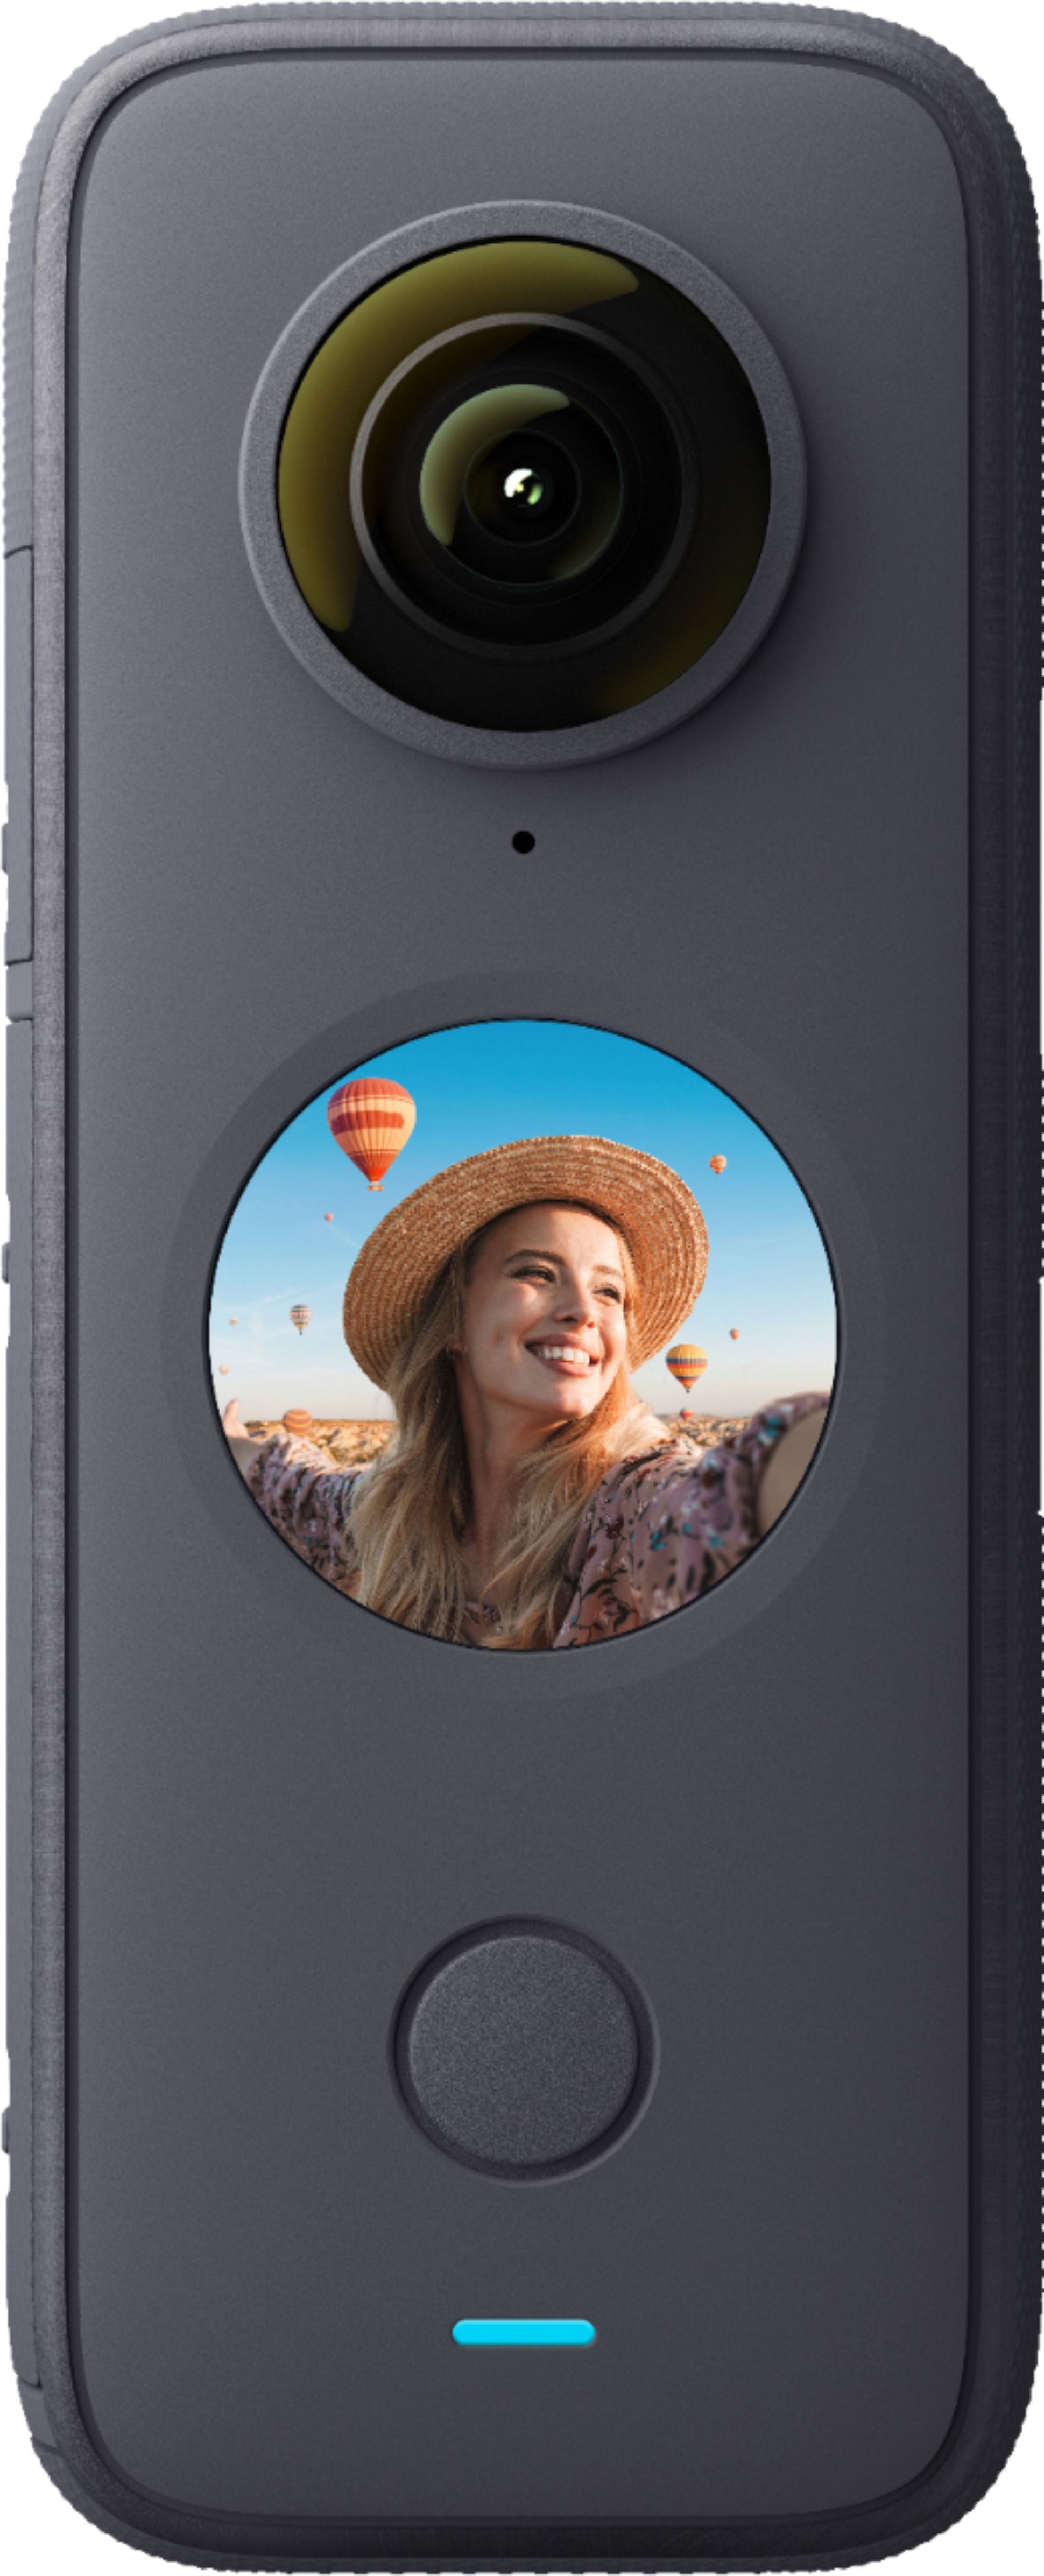 メーカー直送品 Insta360one X2 デジタルカメラ